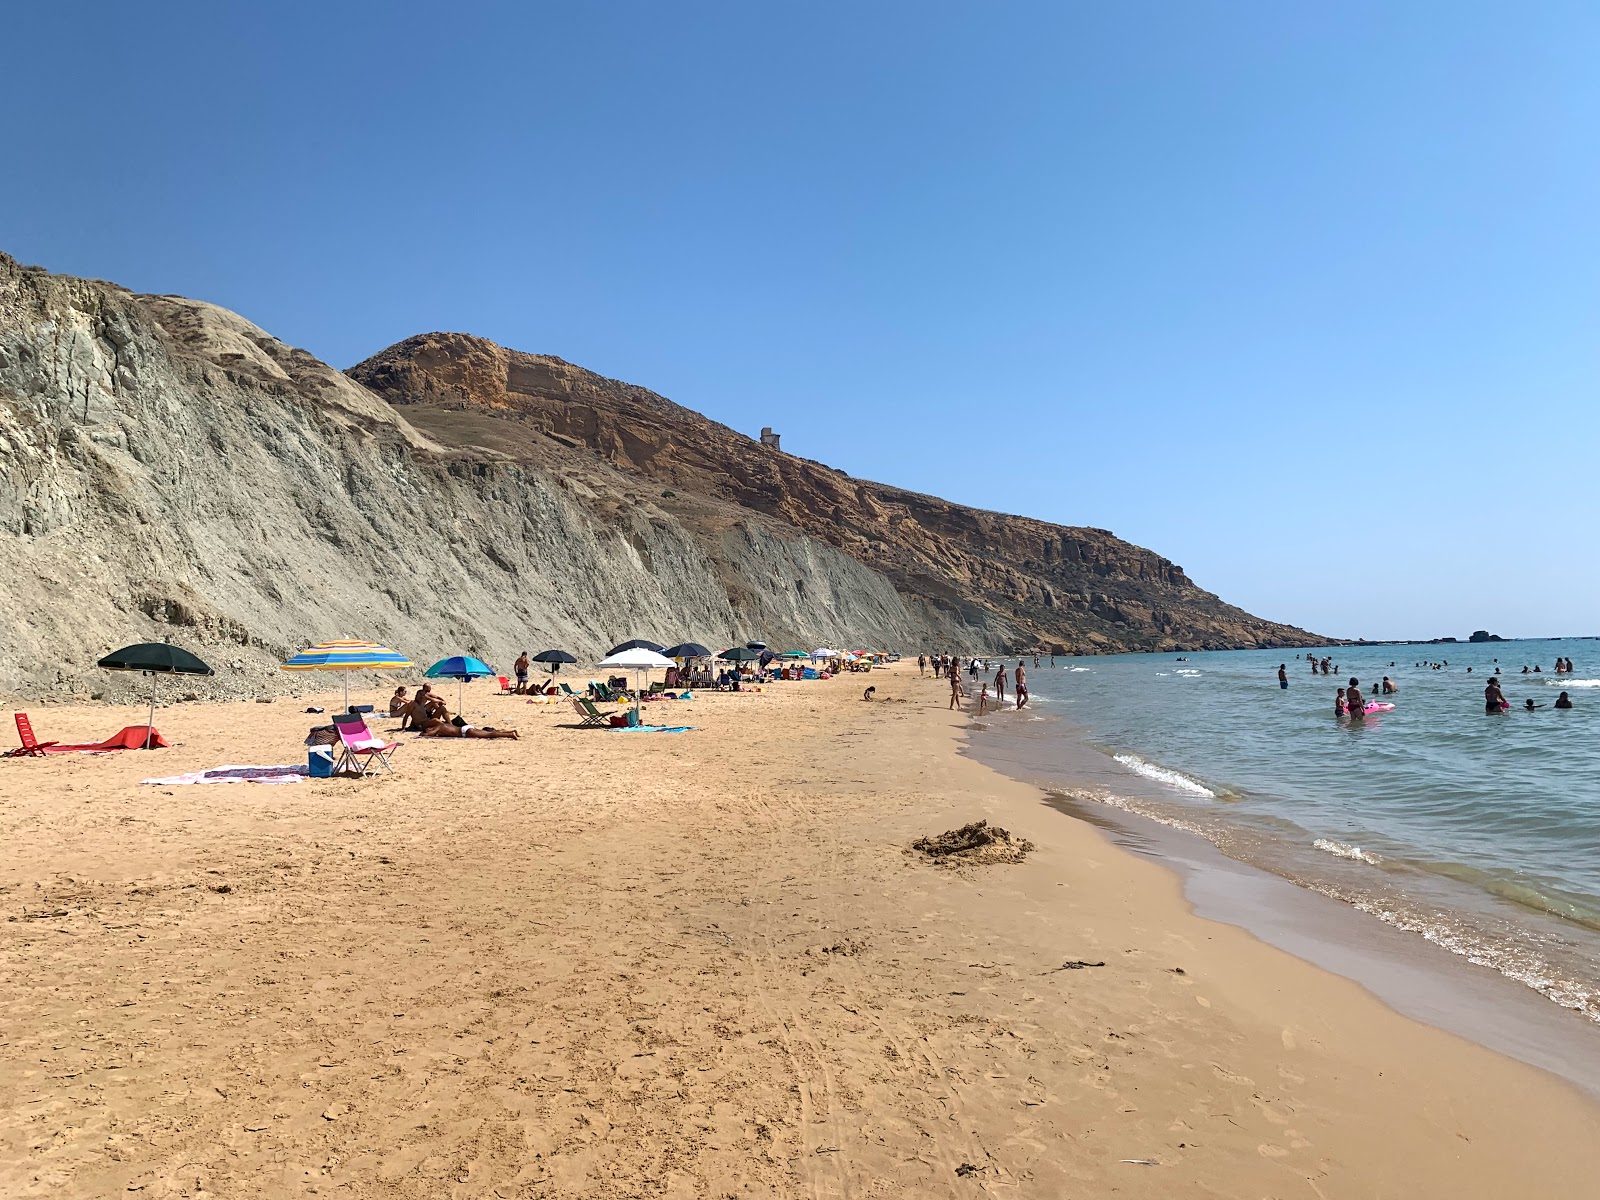 Fotografie cu La Spiaggetta cu o suprafață de nisip fin strălucitor